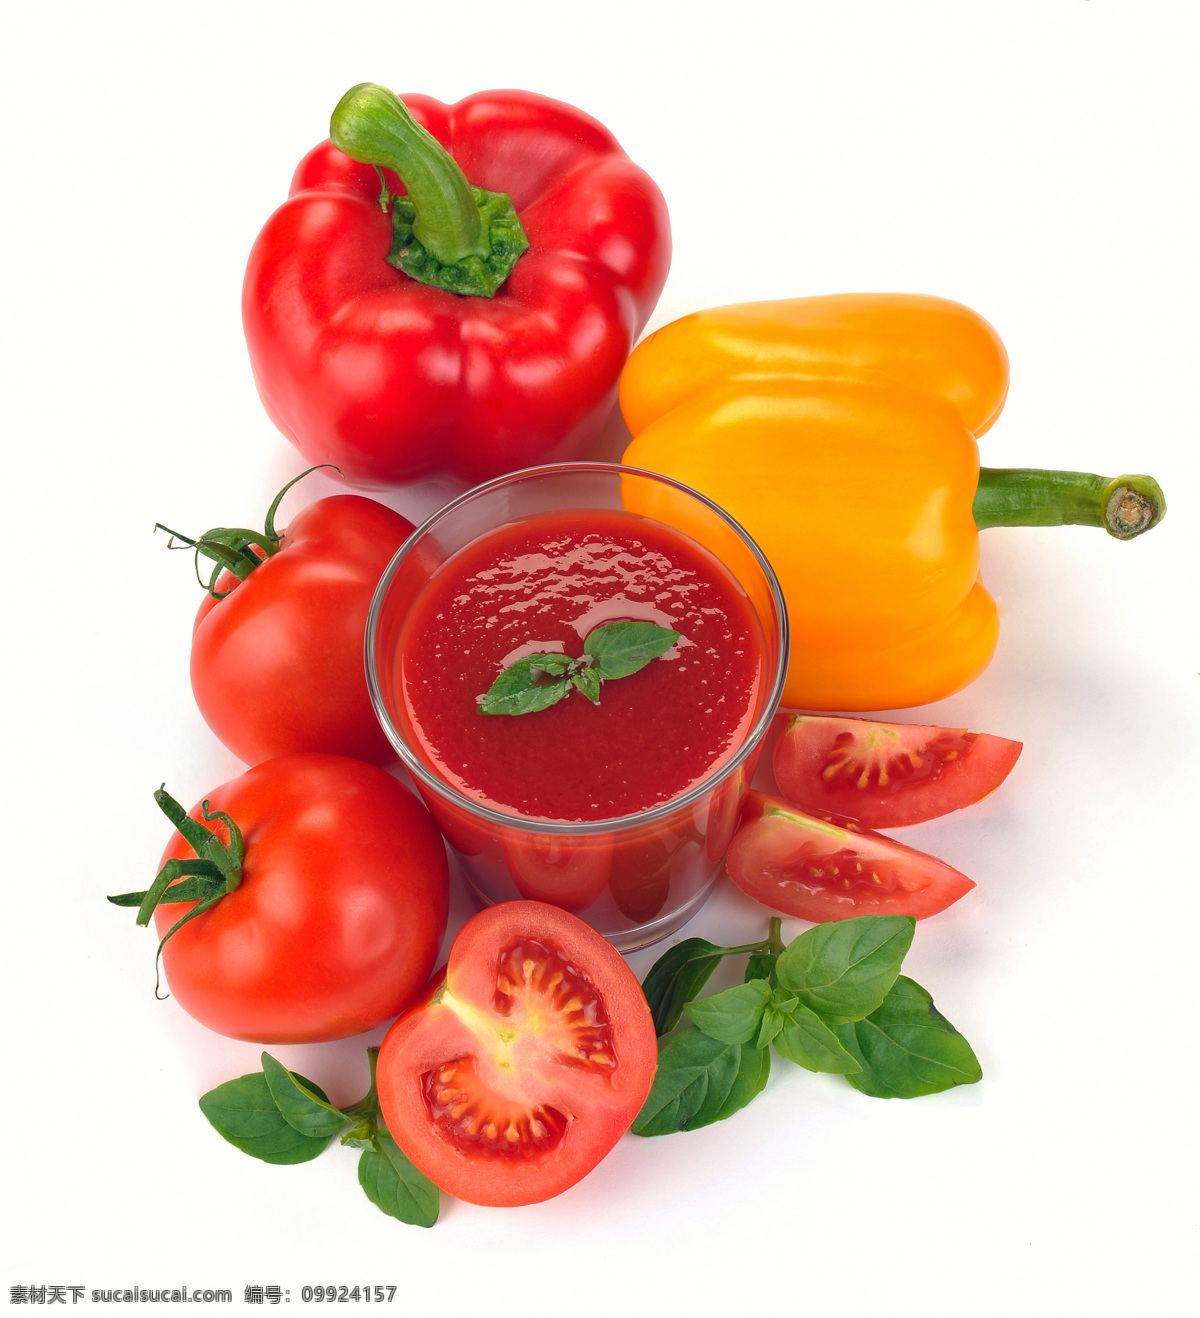 一杯 番茄汁 辣椒 番茄 可口的西红柿 西红柿 小西红柿 小番茄 蔬菜 健康蔬菜 蔬菜图片 餐饮美食